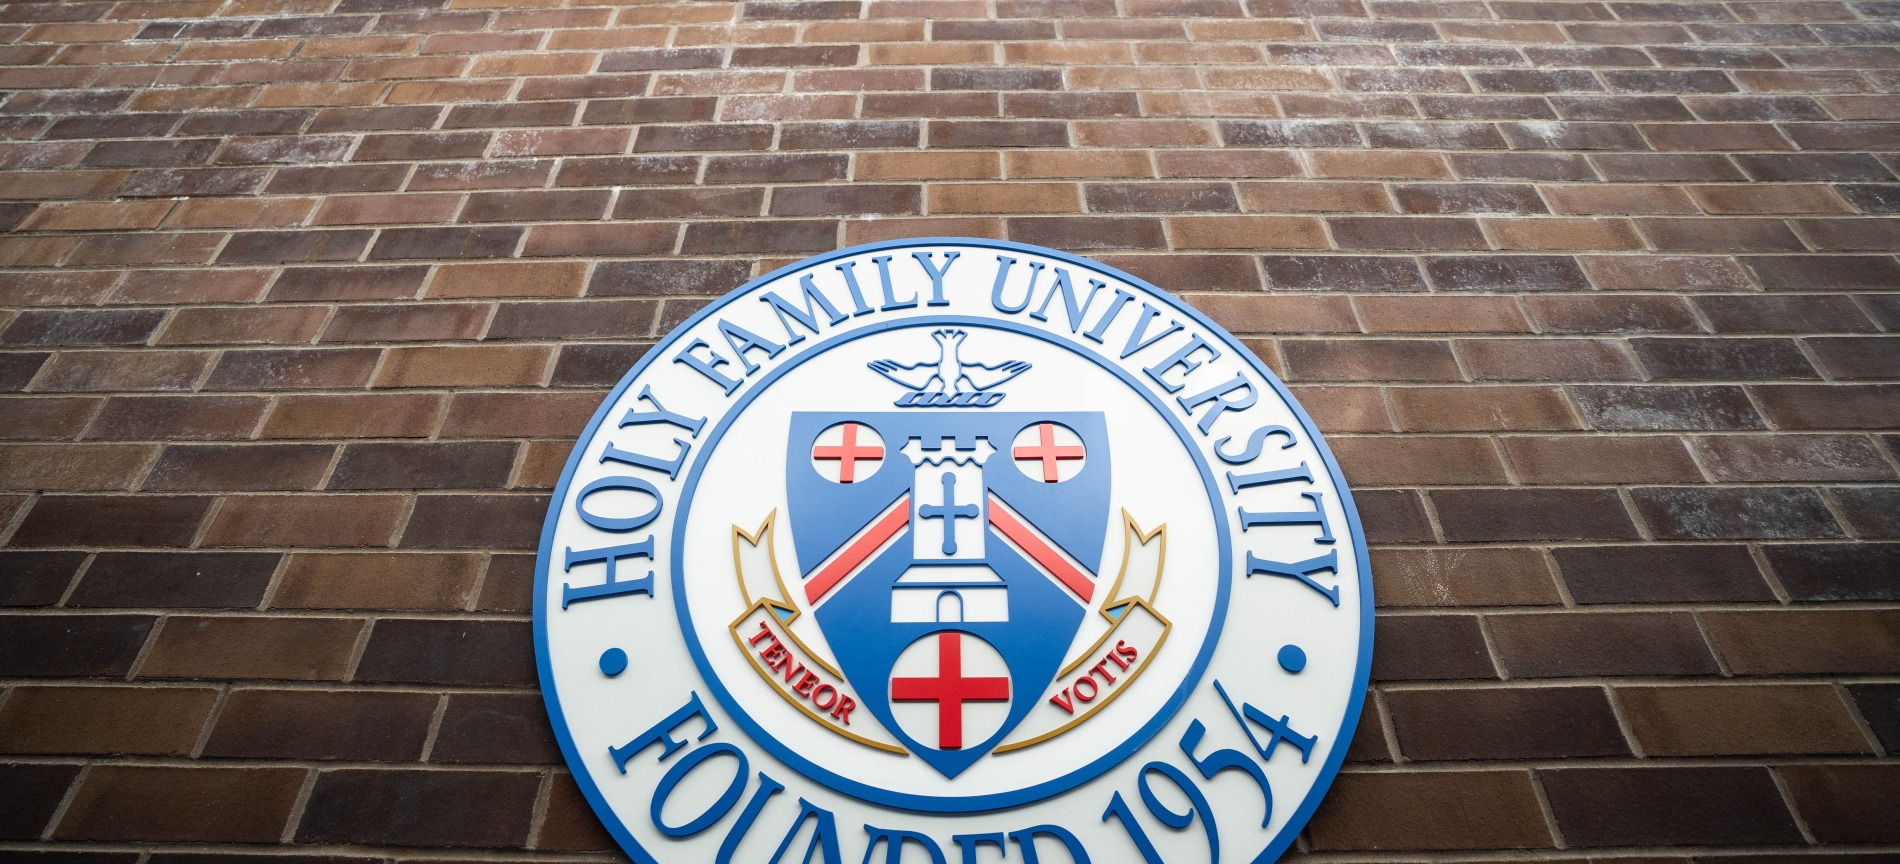 Faculty Senate Holy Family University